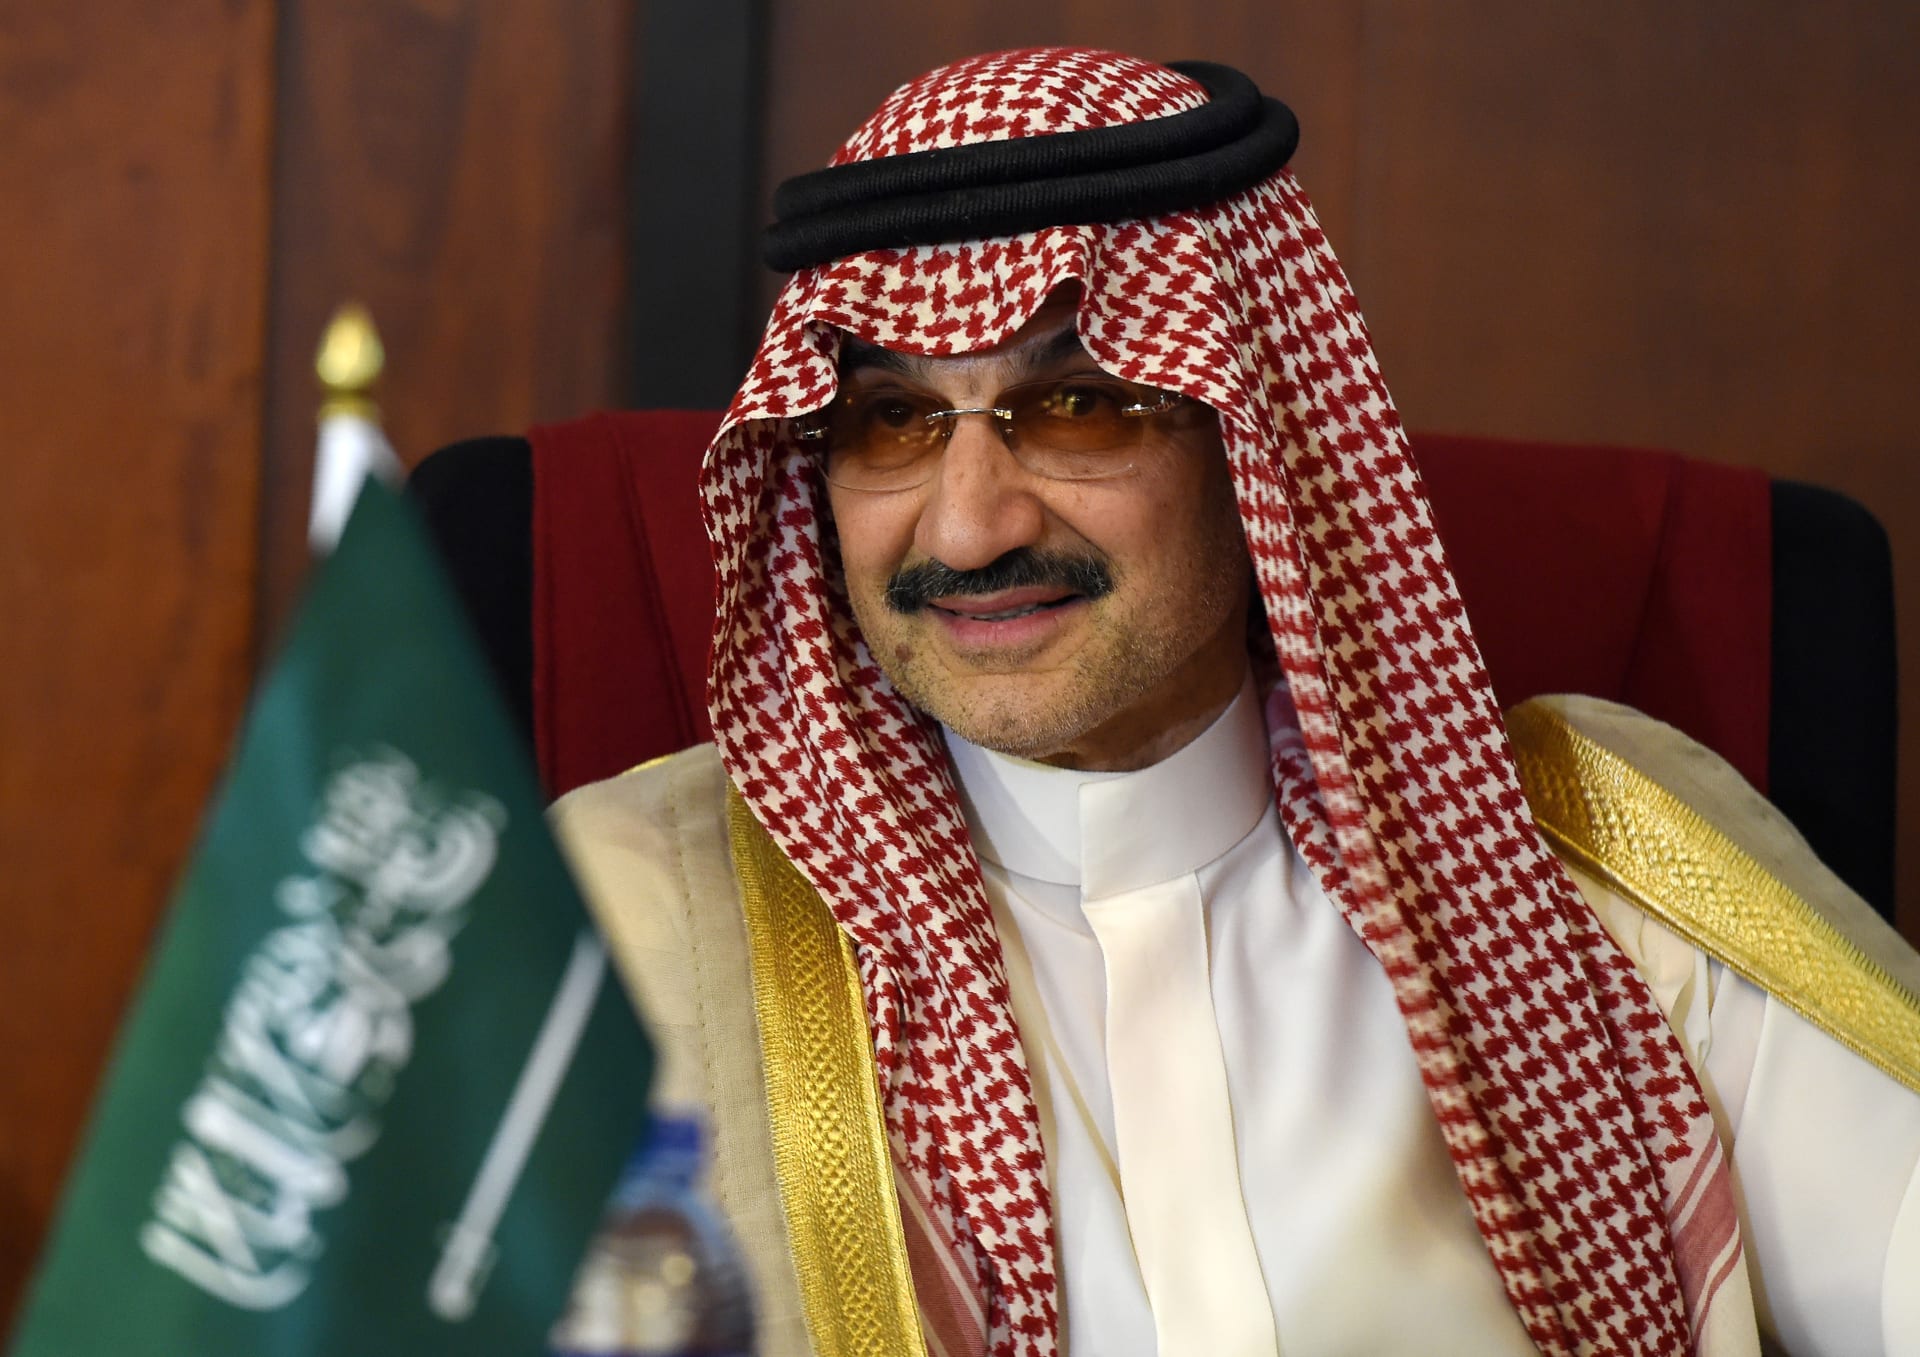 السعودية.. وزارة البيئة تعلق على فيديو "شبة النار" للوليد بن طلال: قد يكون مكلفا 